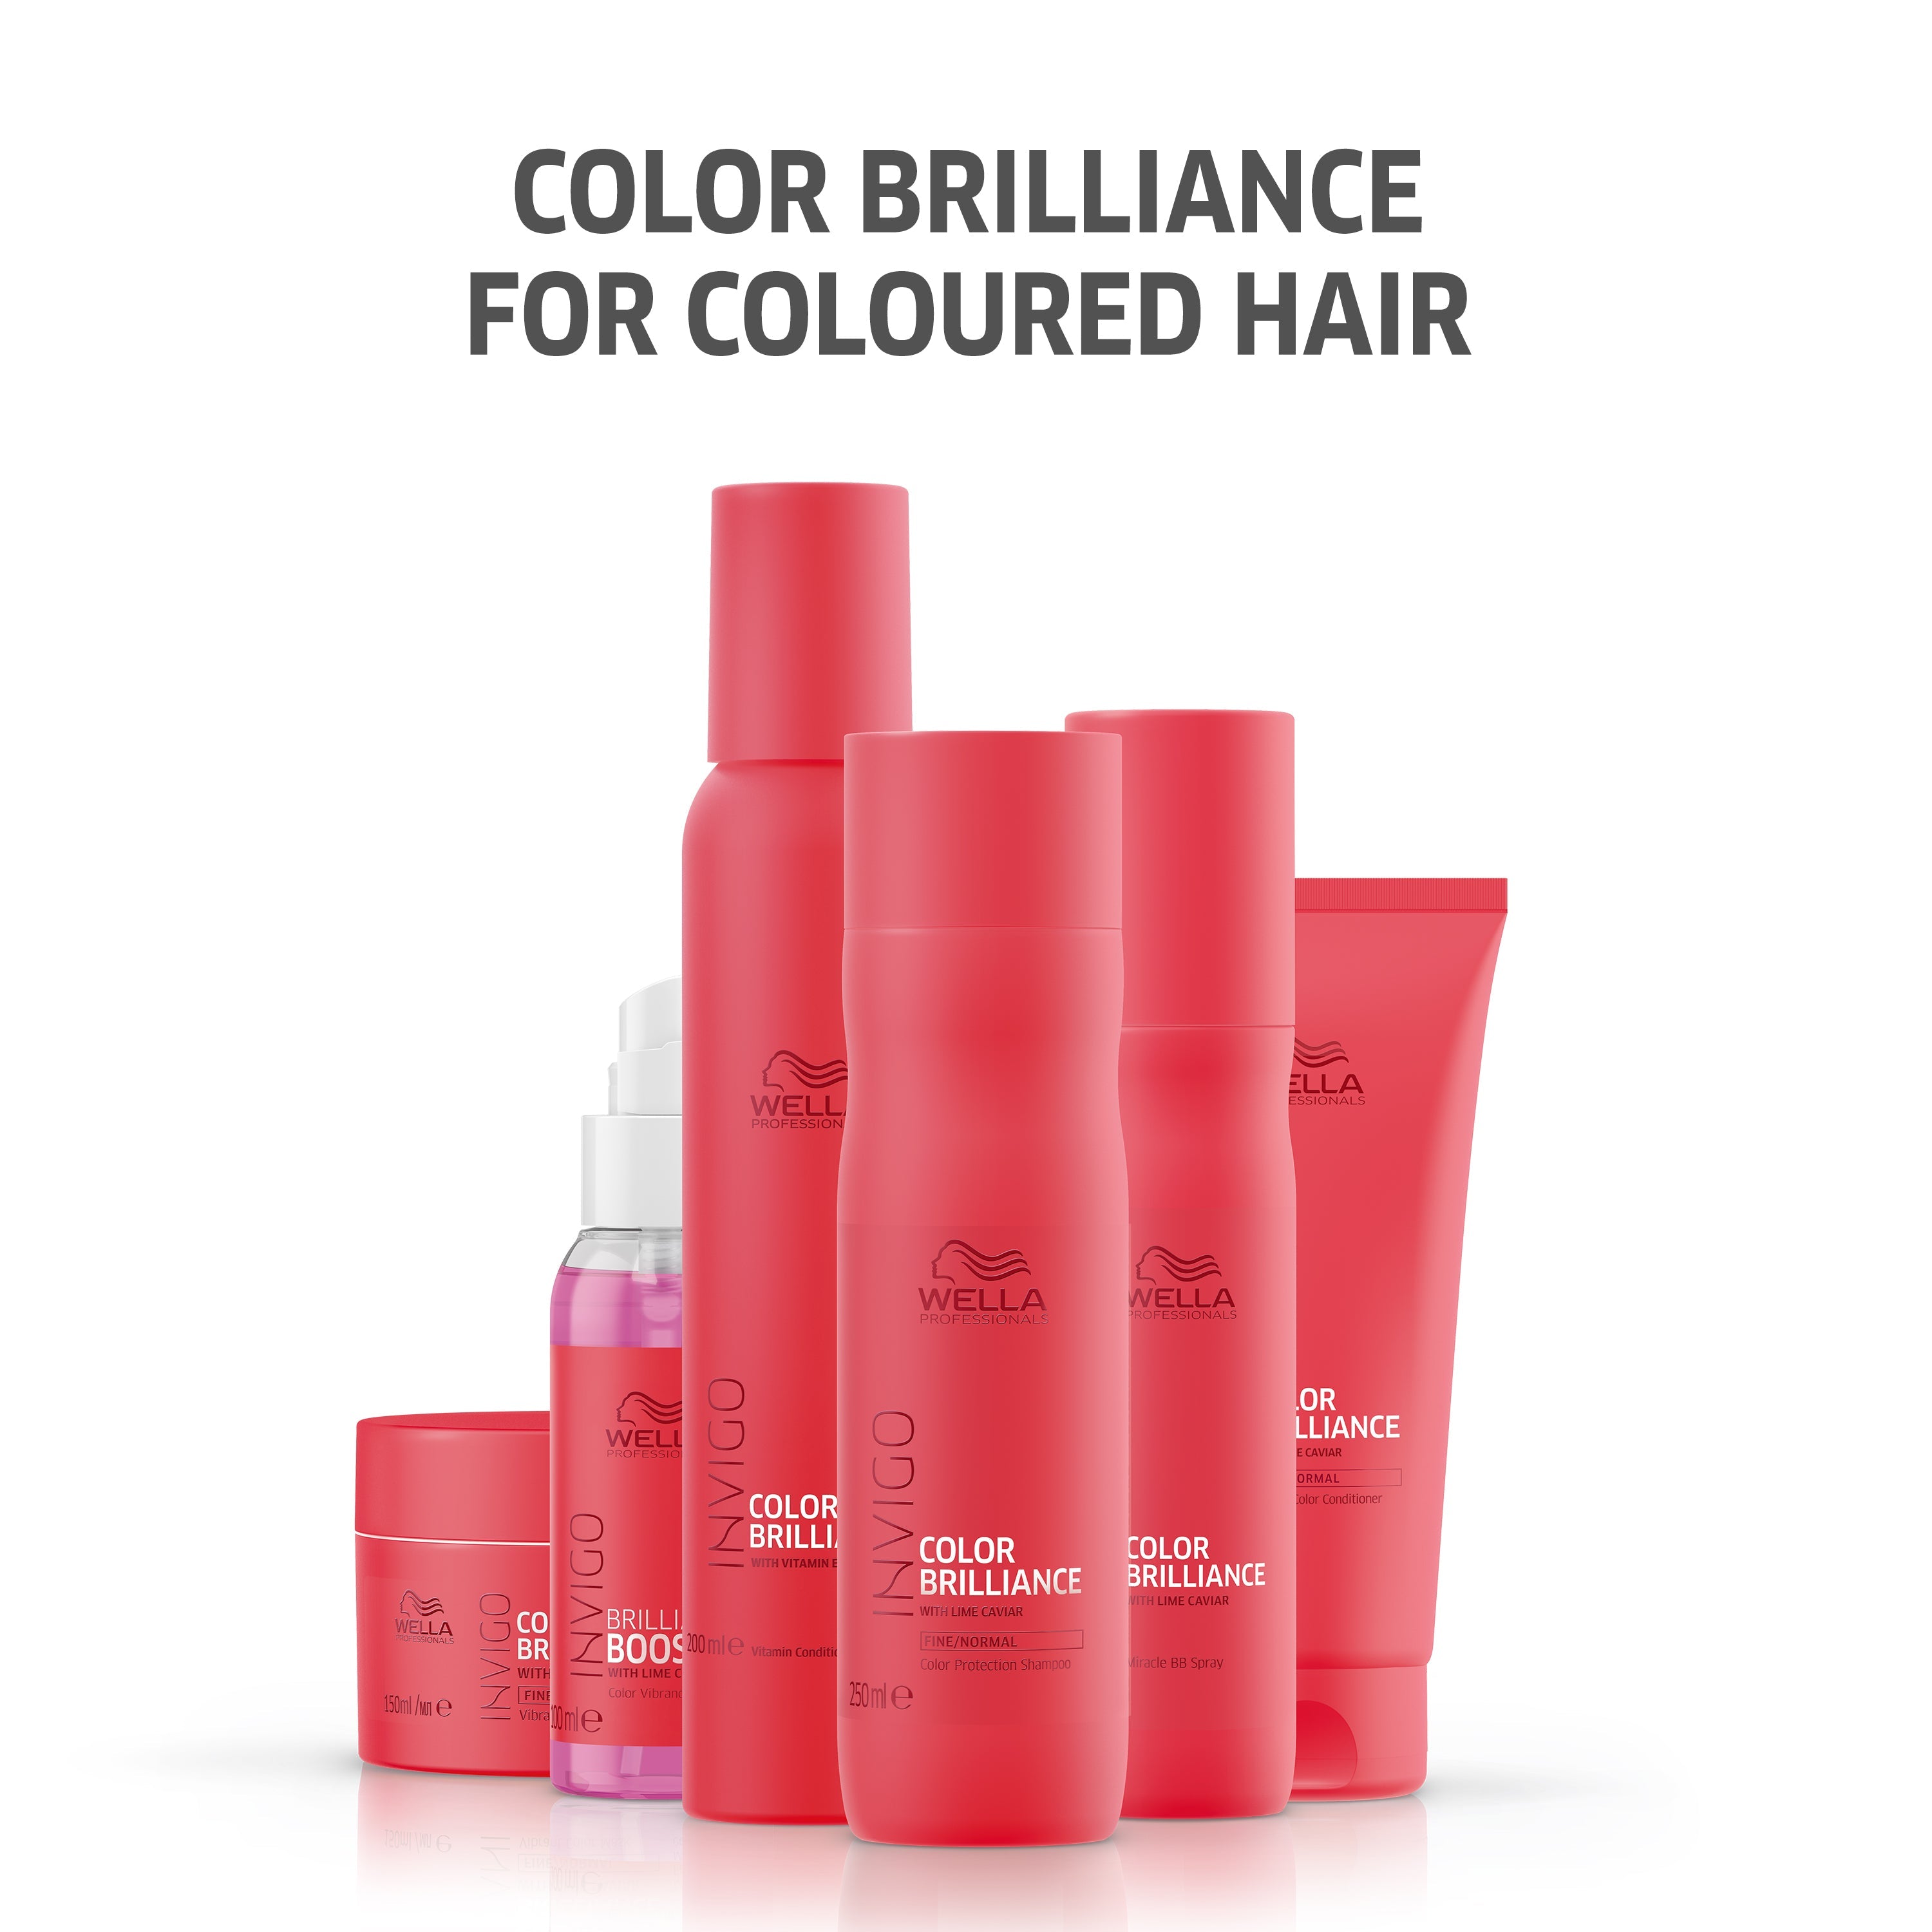 Wella Professional Invigo Shampoo 500 Ml Brilliance Fine